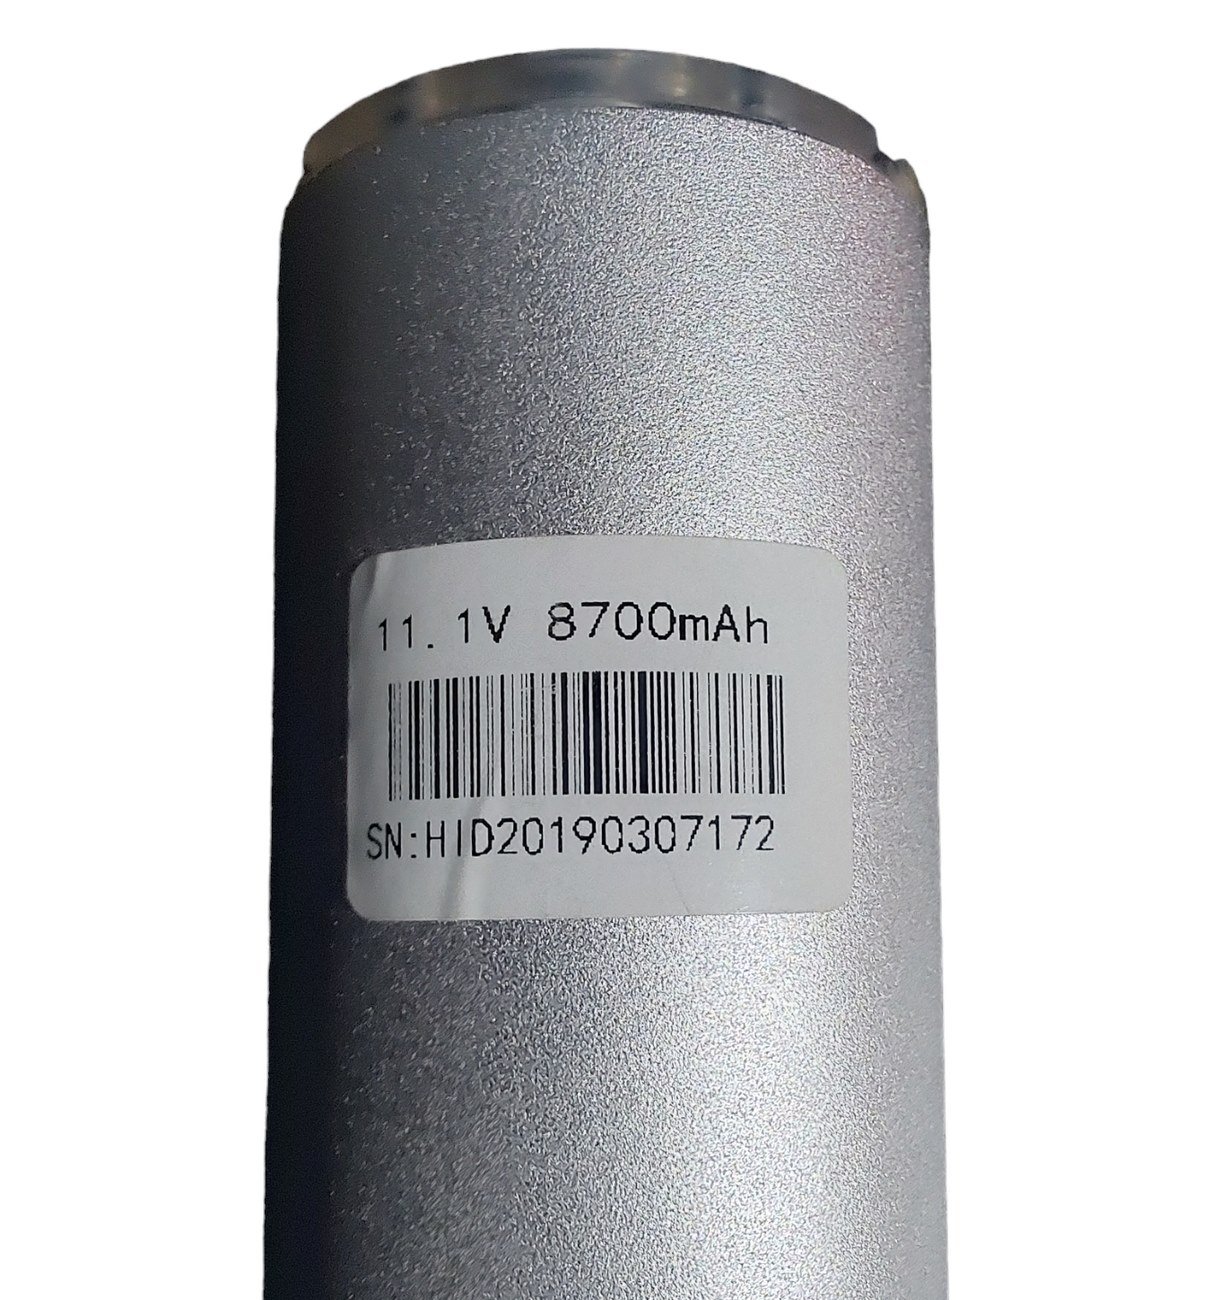 Bateria para Lanterna Xenon Hid 85,75,65w 8700 Mah Rvnovidades - 4